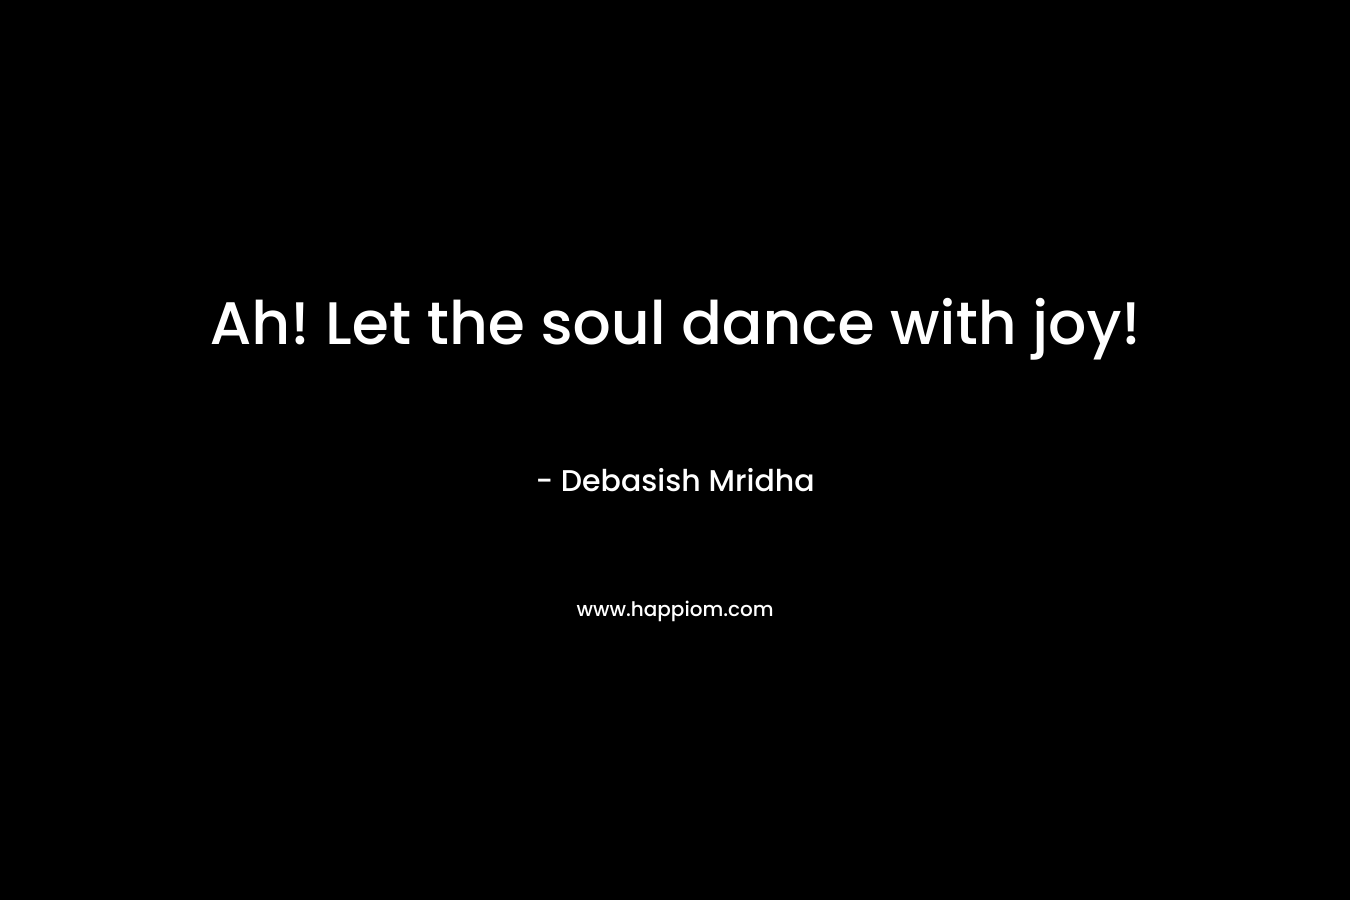 Ah! Let the soul dance with joy!